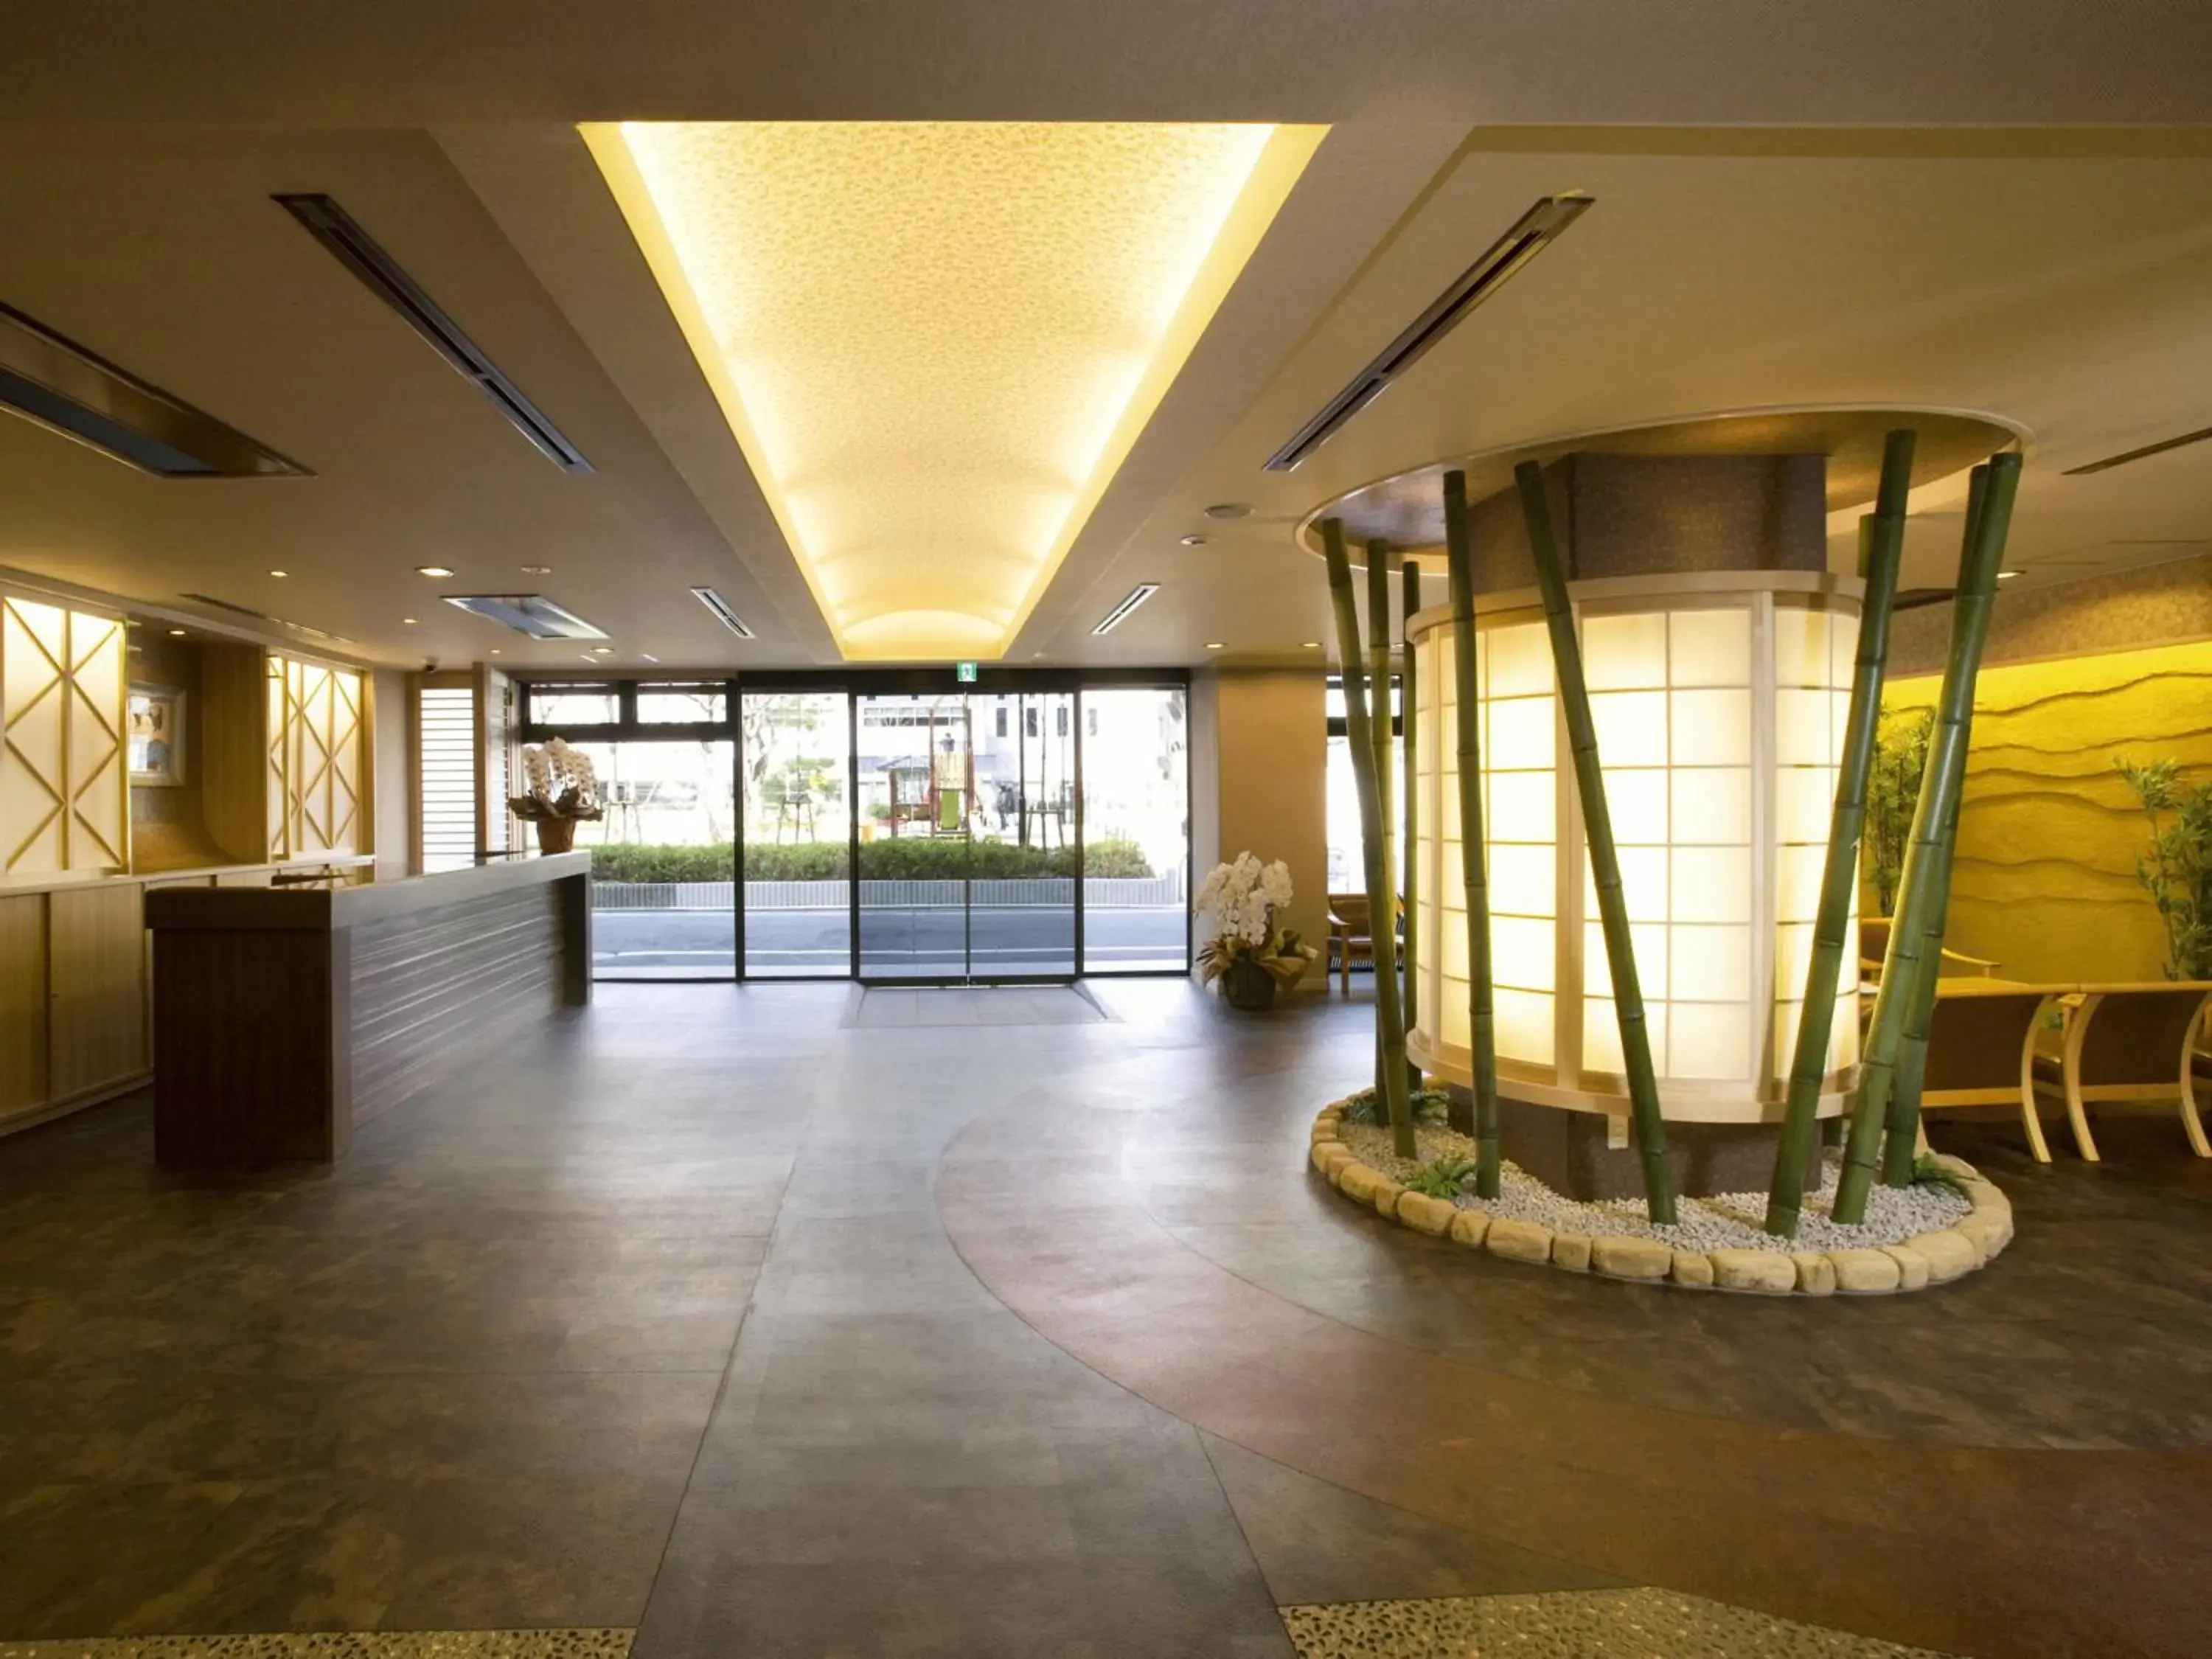 Lobby or reception, Lobby/Reception in Ryokan Hirashin Kyoto